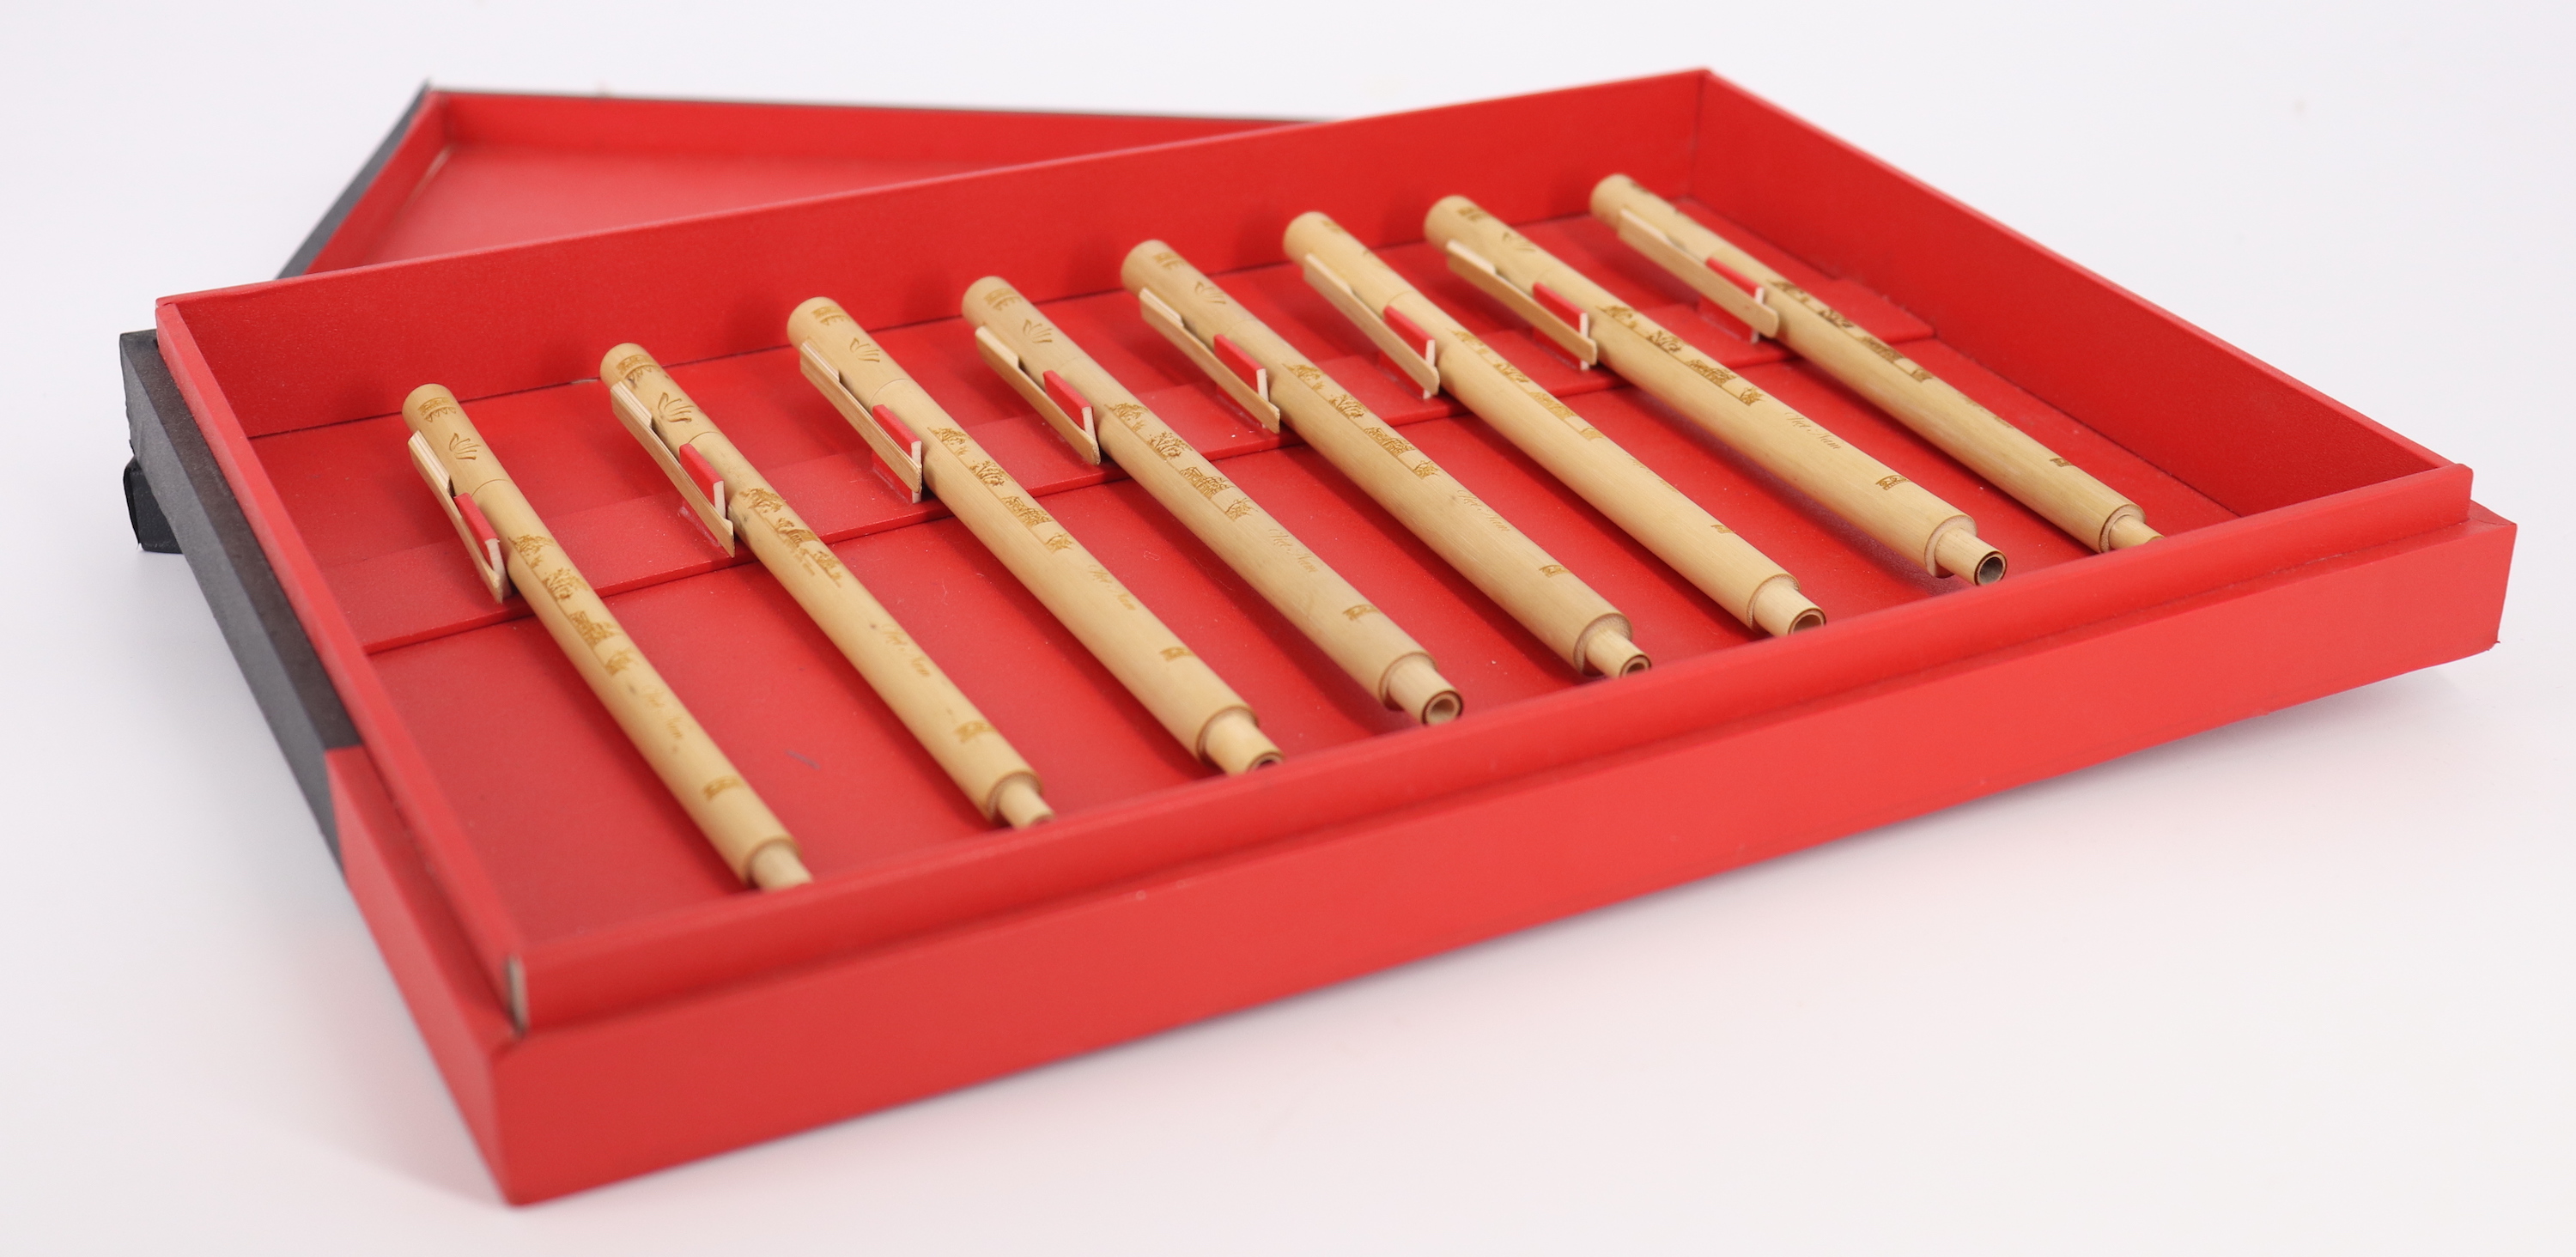 Bút tre bút viết bằng gỗ sử dụng trong công việc, học tập và nhà trường, quà tặng cho bạn bè thầy cô